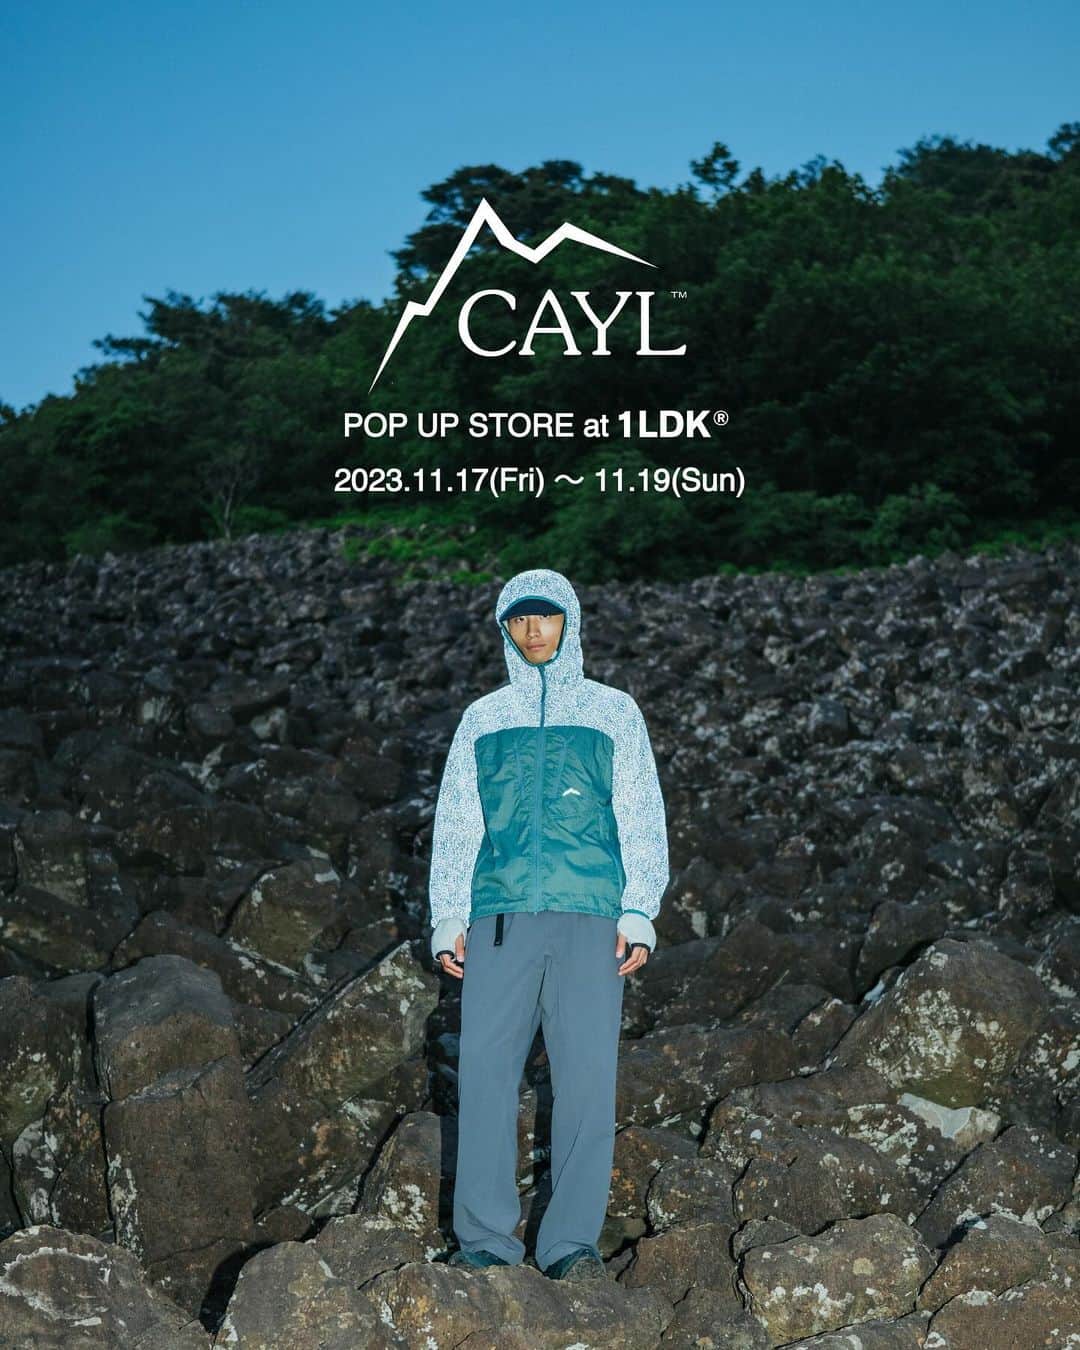 1LDKのインスタグラム：「2023年11月17日(金)から韓国発アウトドアブランド〈 CAYL 〉のPOP UP STOREを1LDKにて開催します。 ⁡ 〈 CAYL 〉 CAYL(ケイル)は2011年より韓国でスタートしたアウトドアブランド。 クライミング、トレイルランニング、ハイキングを生活の基盤としたチームで立ち上げ、 山と街をボーダレスに行き来するスタイルを提示しています。 ⁡ 店舗: 1LDK (中目黒) 期間: 2023年11月17日(金)〜19日(日) 開店時間: (金)13:00〜19:00 / (土日)12:00〜19:00 ⁡ 下記日時はCAYLデザイナーのLEEさんが在店いたします。 11/17(金) 15:00～19:00 11/18(土) 12:00～16:00 ⁡ 本日BLOGを公開します。 ストーリーズのリンクより是非ご覧ください。 ⁡ #CAYL @cayl_official #1ldk #1ldknakameguro #1ldkshopofficial」